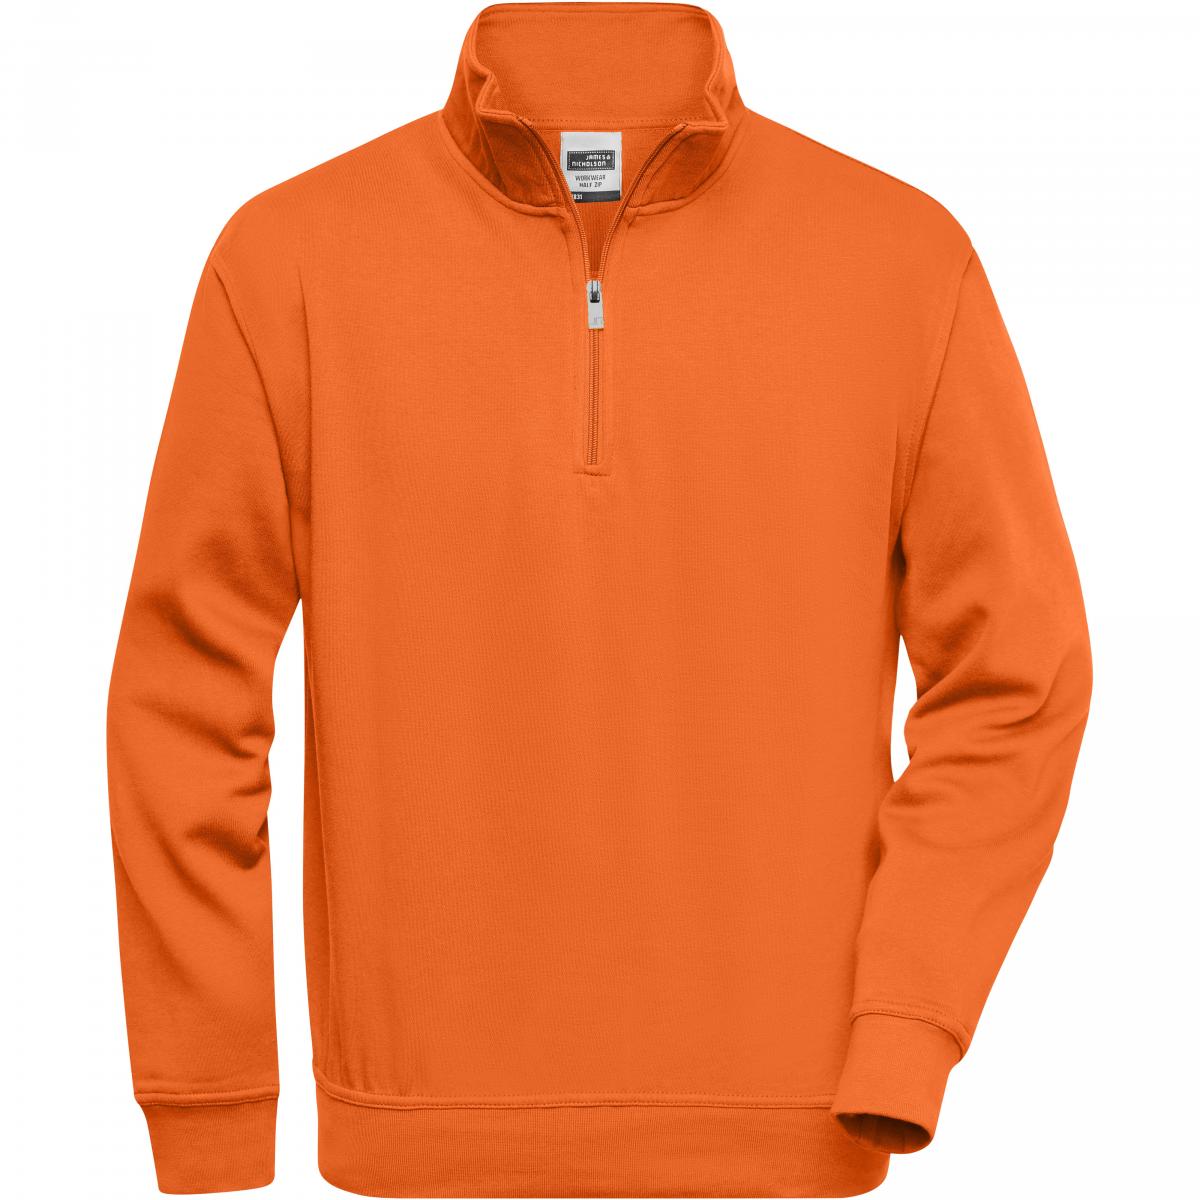 Hersteller: James+Nicholson Herstellernummer: JN831 Artikelbezeichnung: Workwear Half Zip Sweatshirt +Waschbar bis 60 °C Farbe: Orange